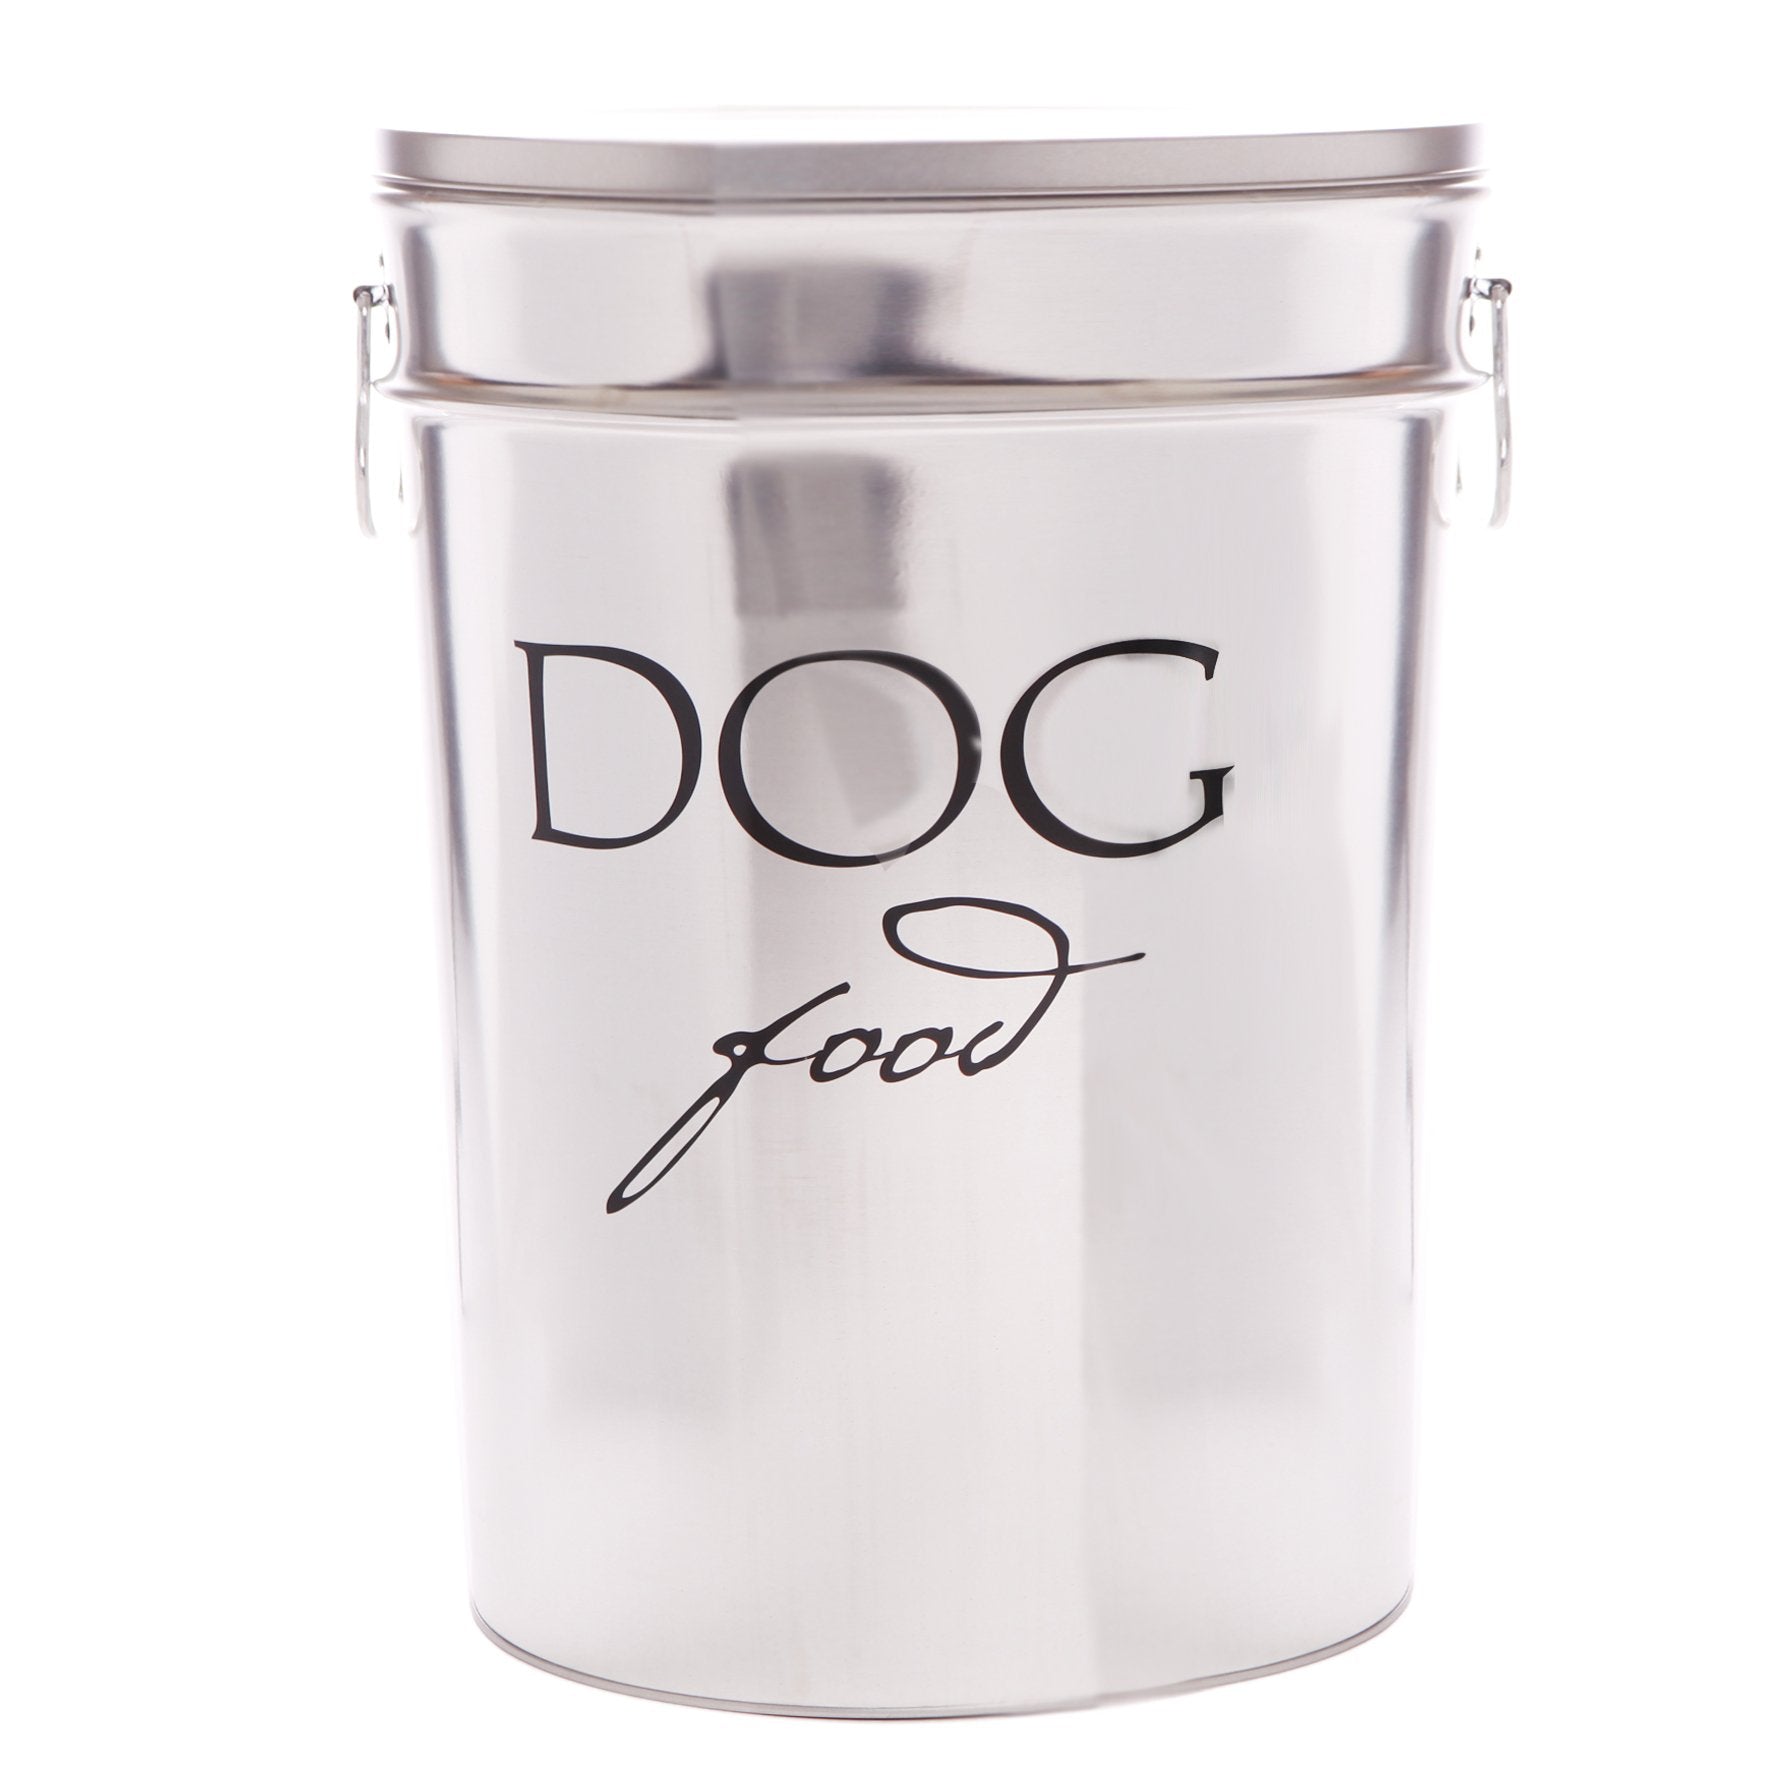 Harry Barker Bon Chien Dog Food Storage Canister, Large